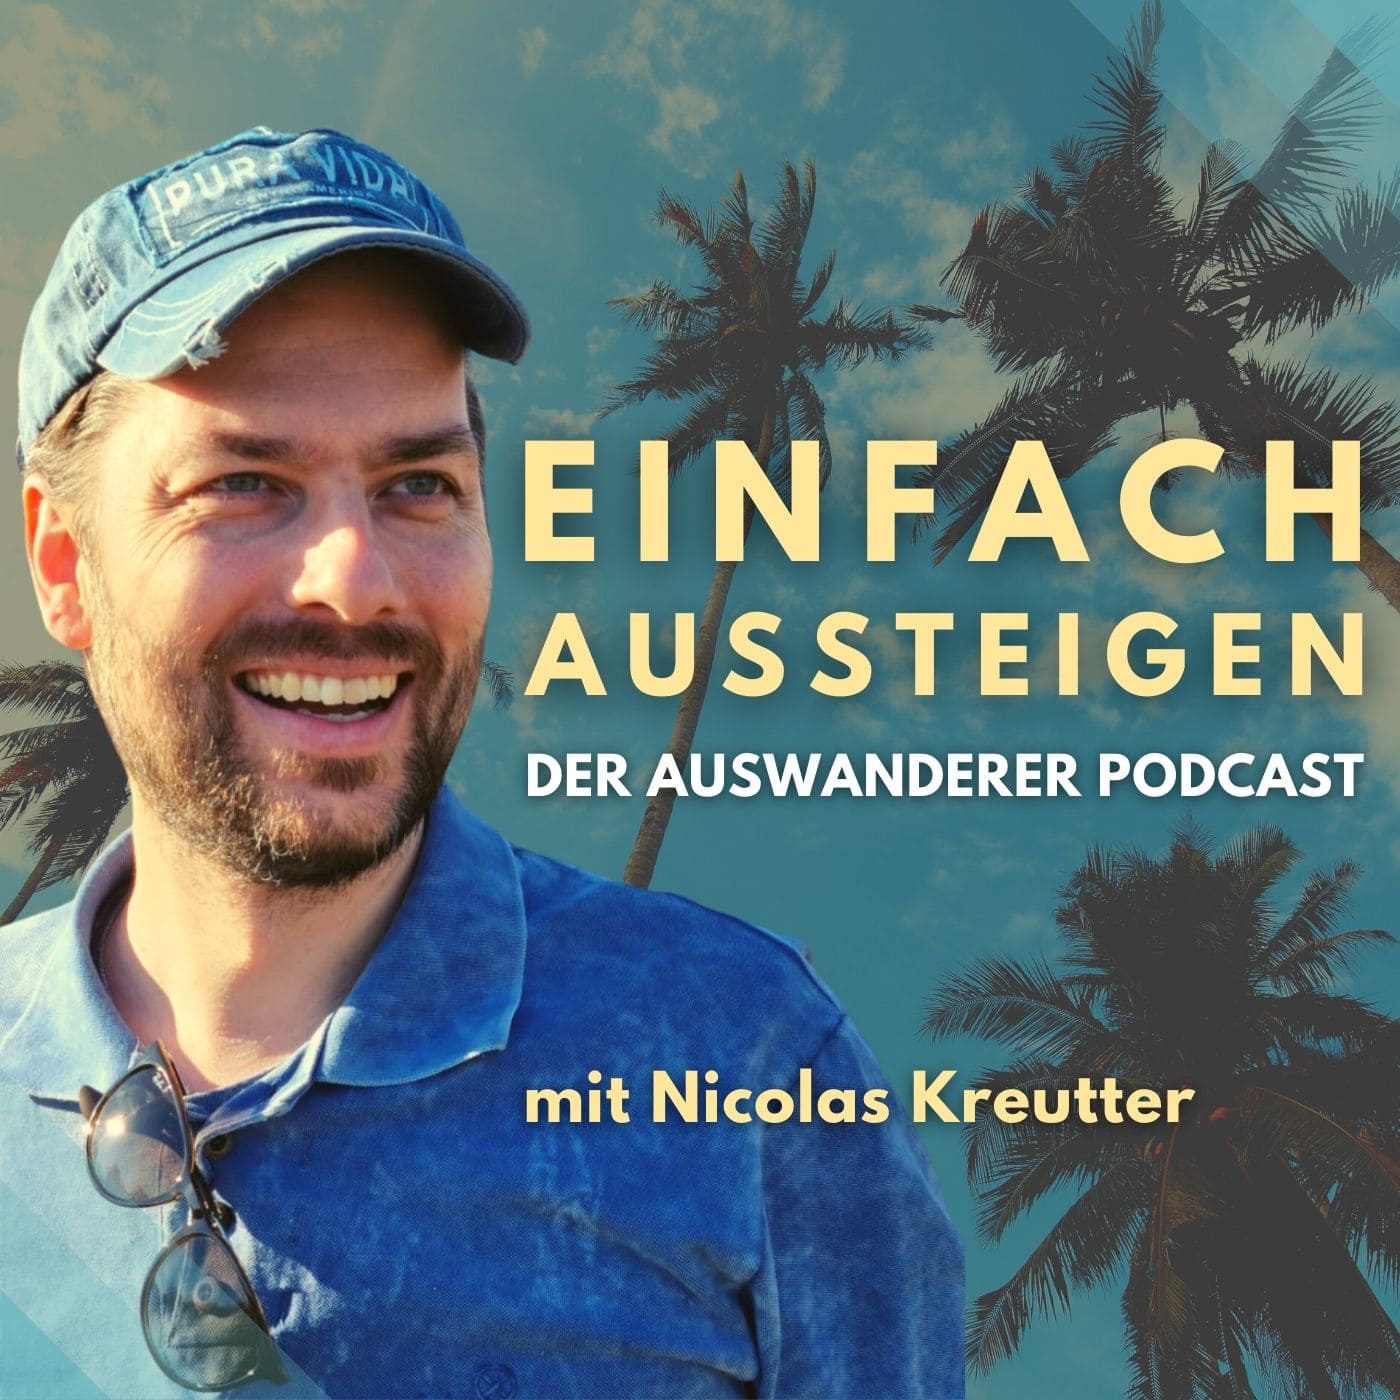 EINFACH AUSSTEIGEN Der Auswanderer Podcast